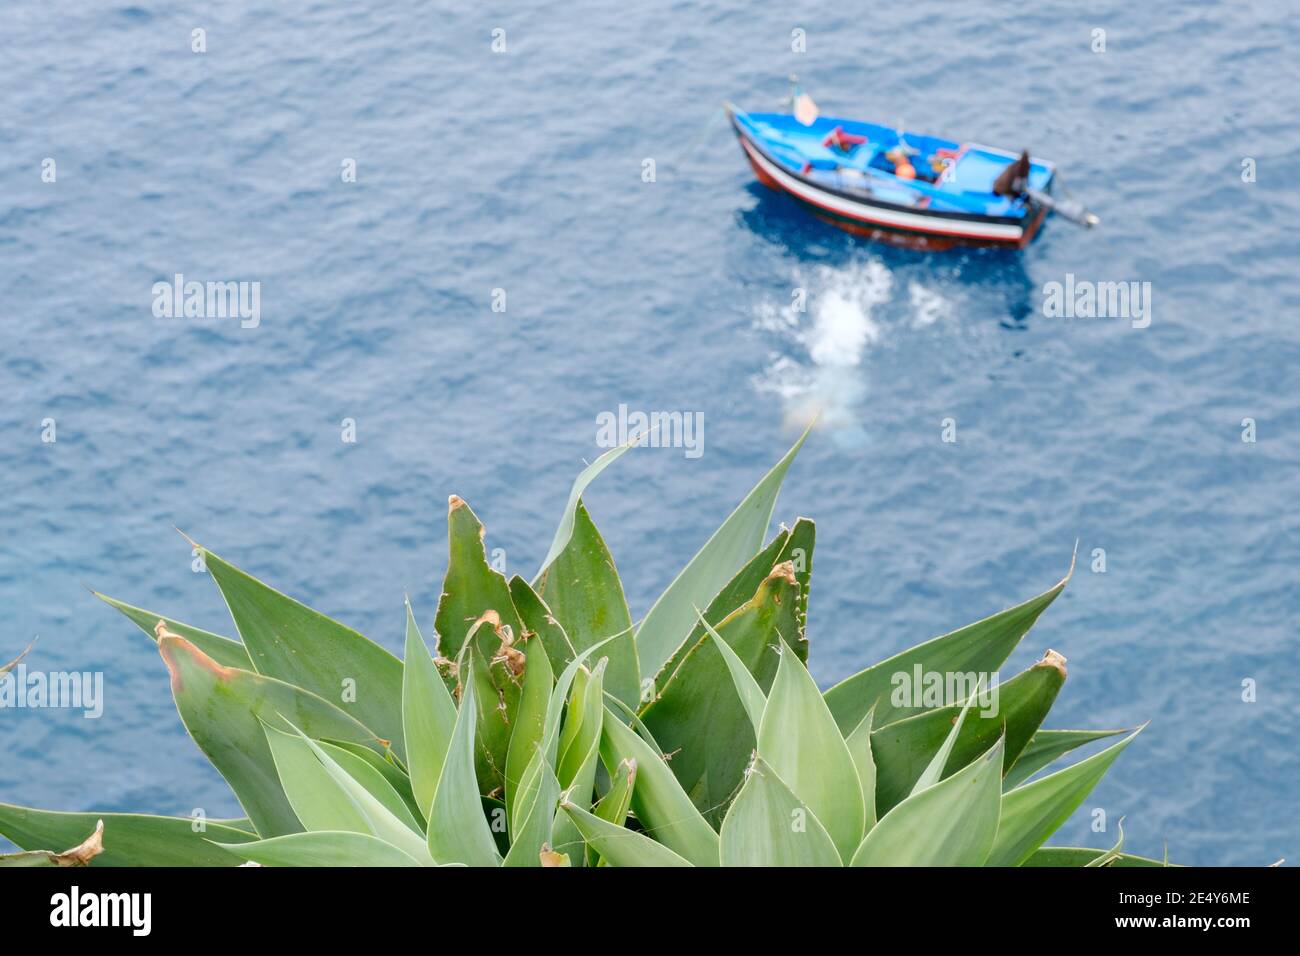 Eine üppige Sukkulente, die den Ozean in einem hohen zeigt Blick mit einem Fischenboot im Hintergrund in der Wasser Stockfoto